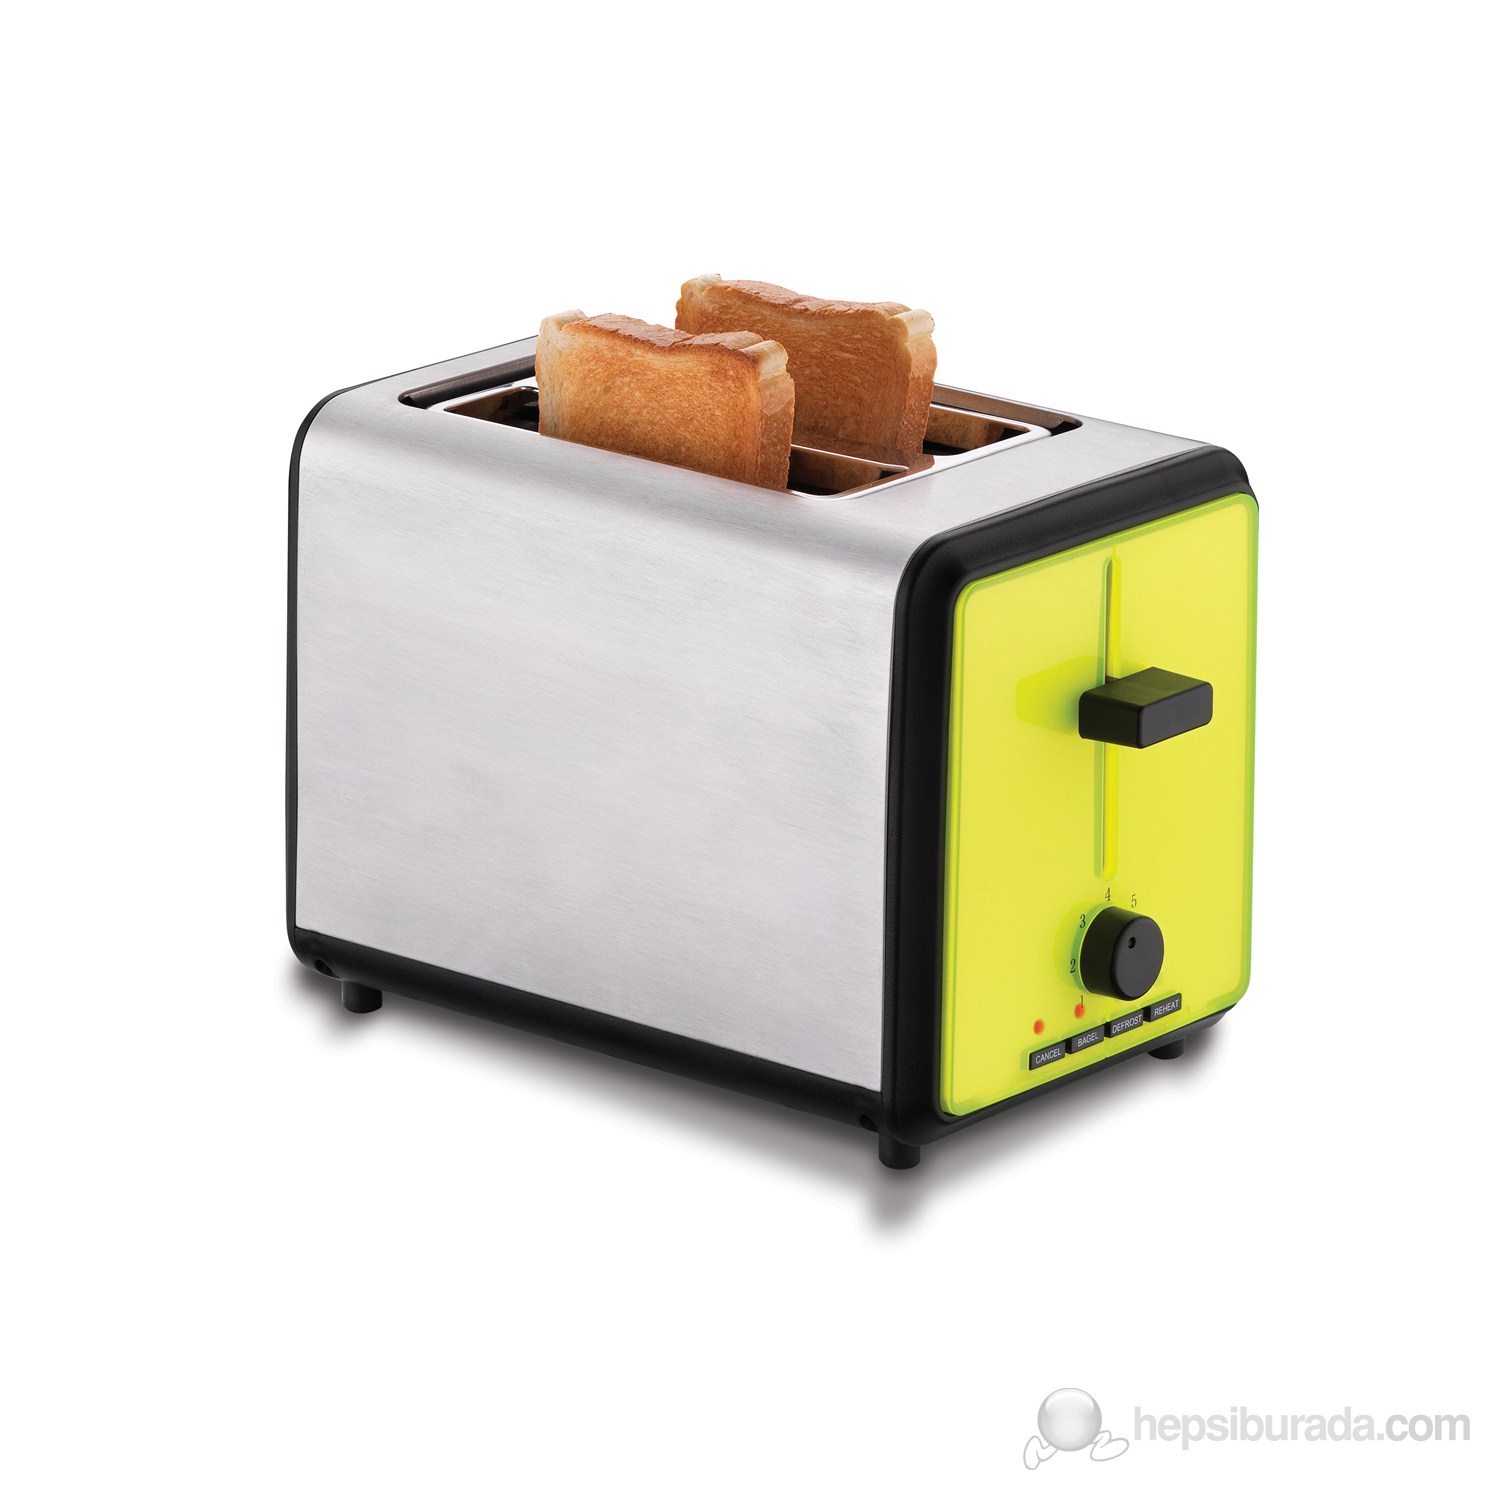 Korkmaz A 411-01 Duofetta Ekmek Kızartma Makinesi Sarı